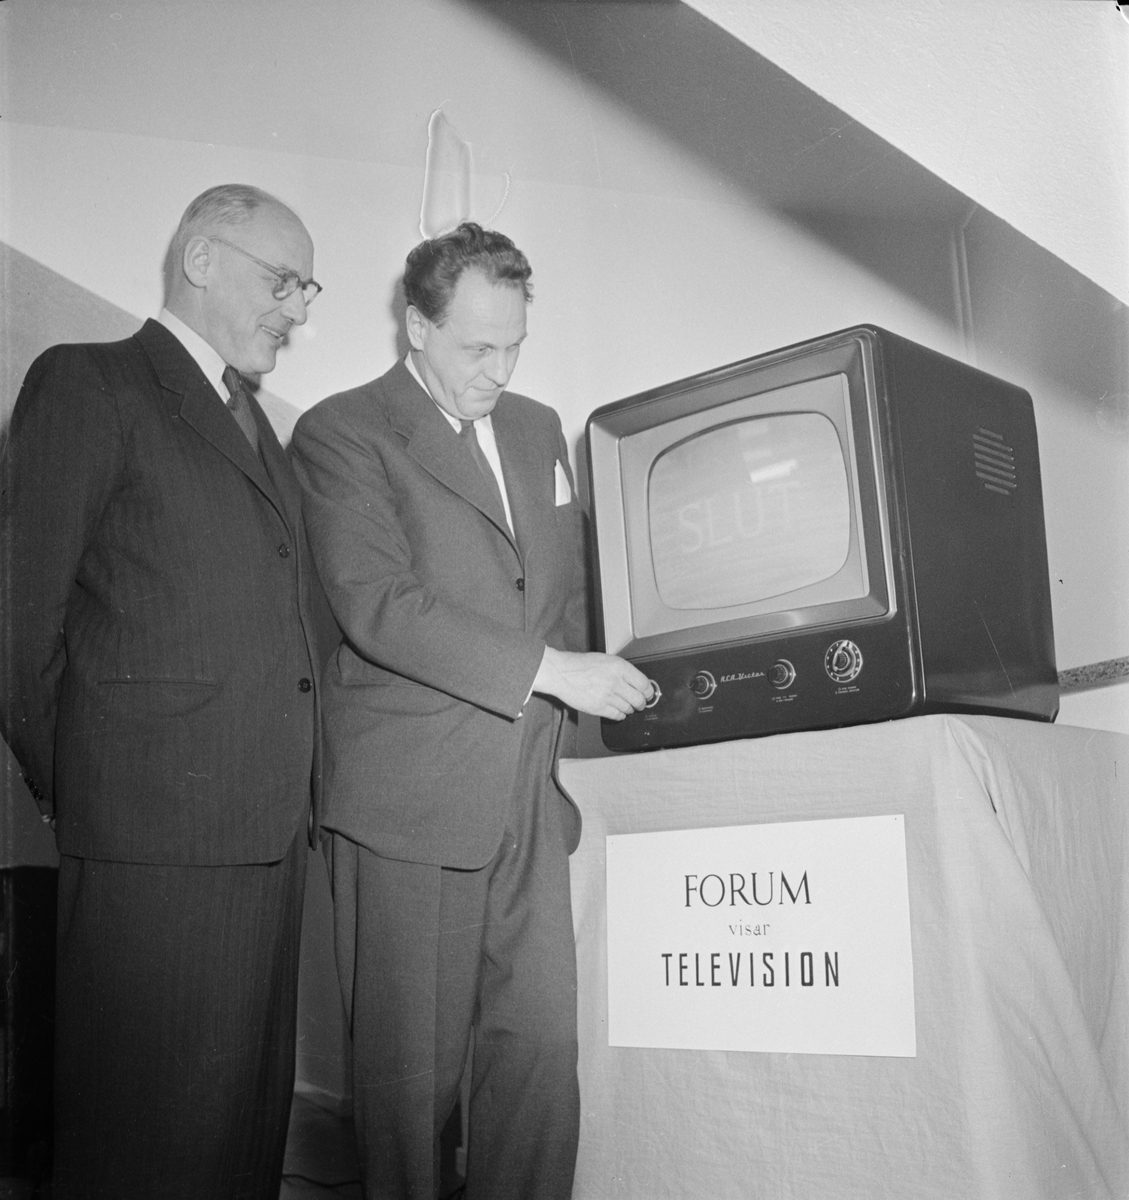 Forum, radioaffären med televisionsapparater, Uppsala 1954